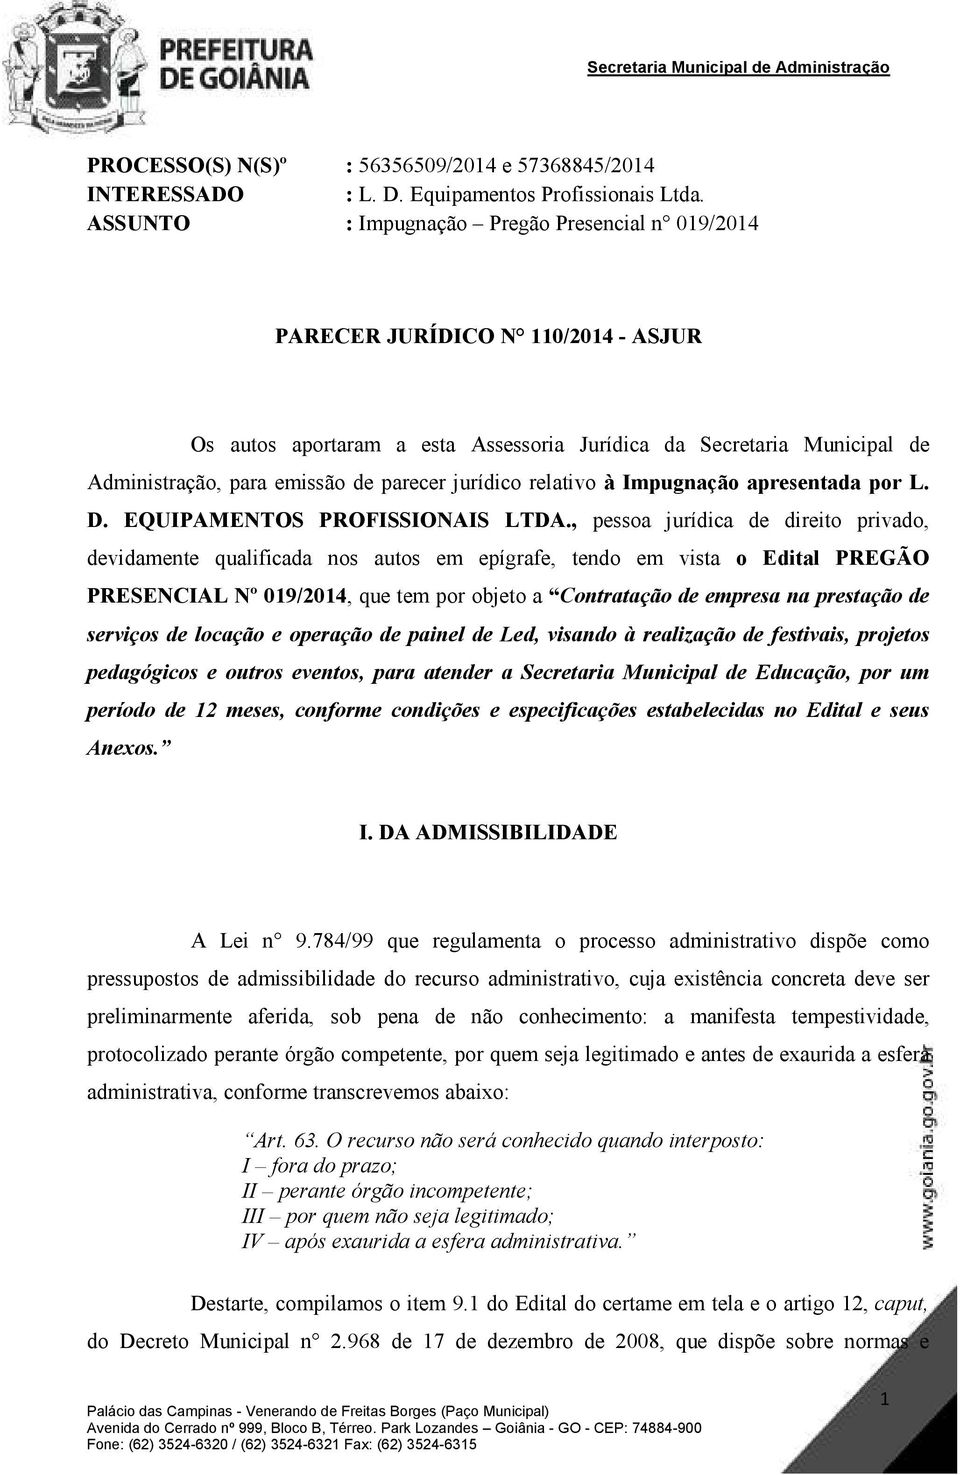 jurídico relativo à Impugnação apresentada por L. D. EQUIPAMENTOS PROFISSIONAIS LTDA.